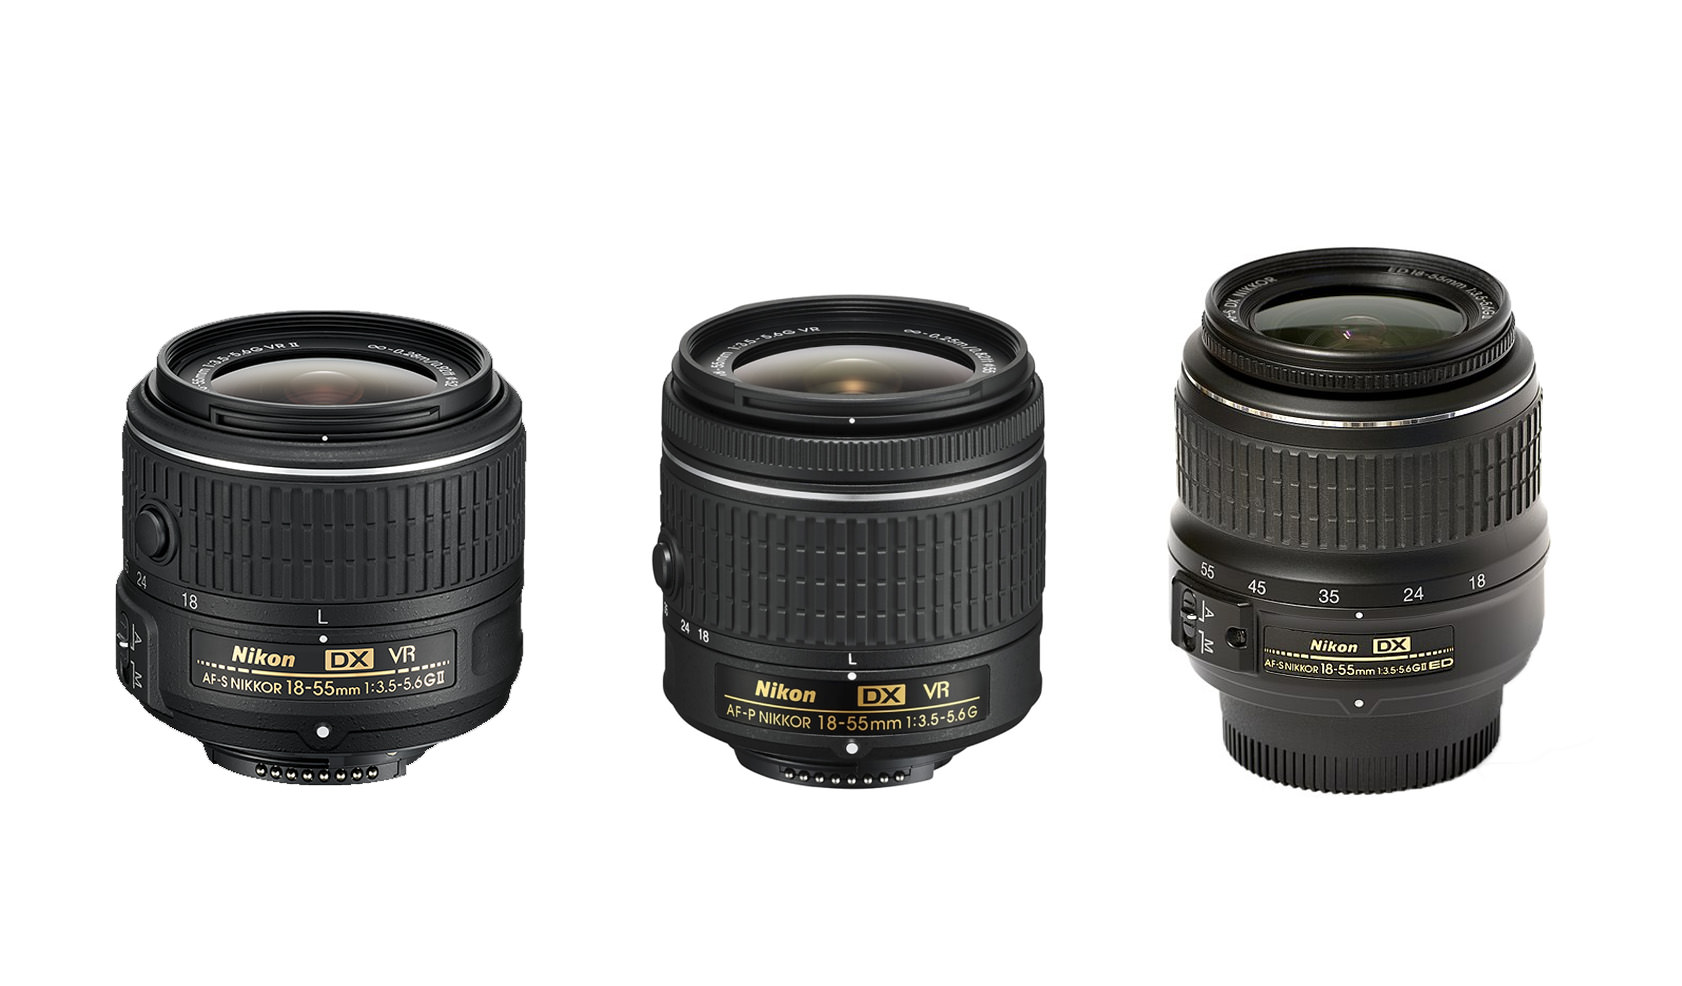 Nikon 18-55mm f/3.5-5.6G DX VR AF-P Review